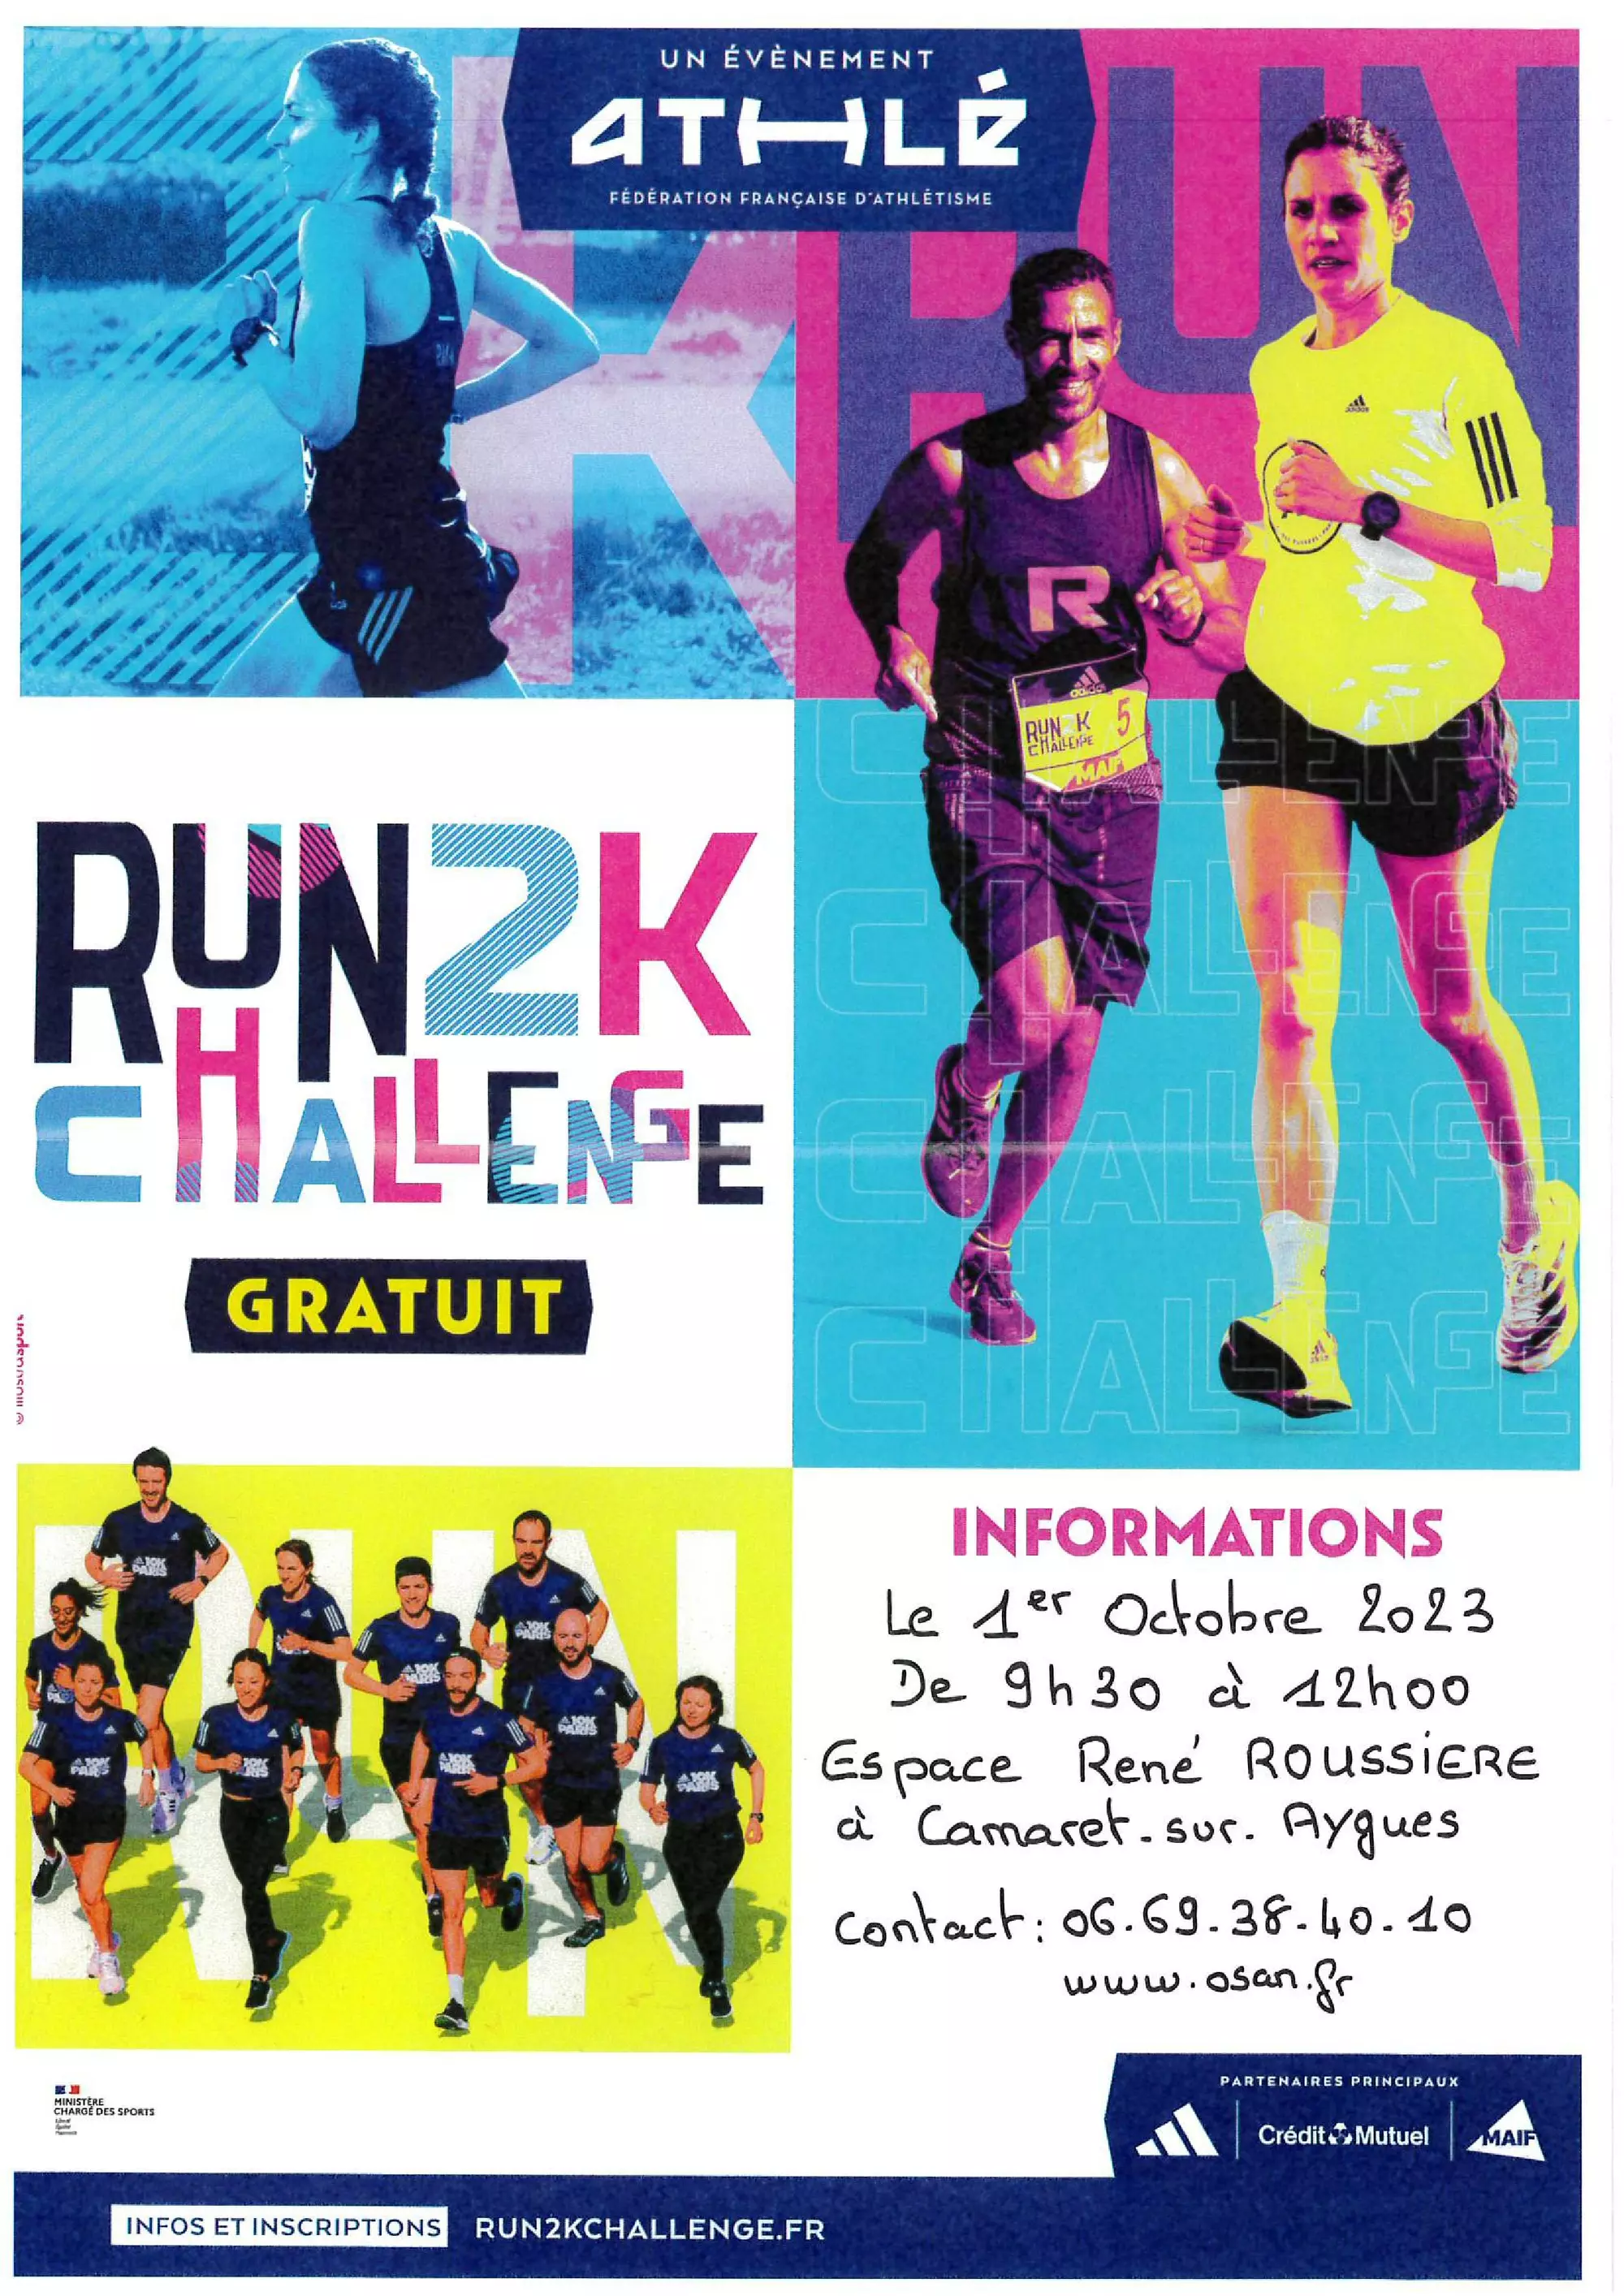 Journées Portes Ouvertes du « RUN 2K CHALLENGE » le dimanche 1er octobre 2023 de 9h30 à 12h00 à l'espace René Roussière